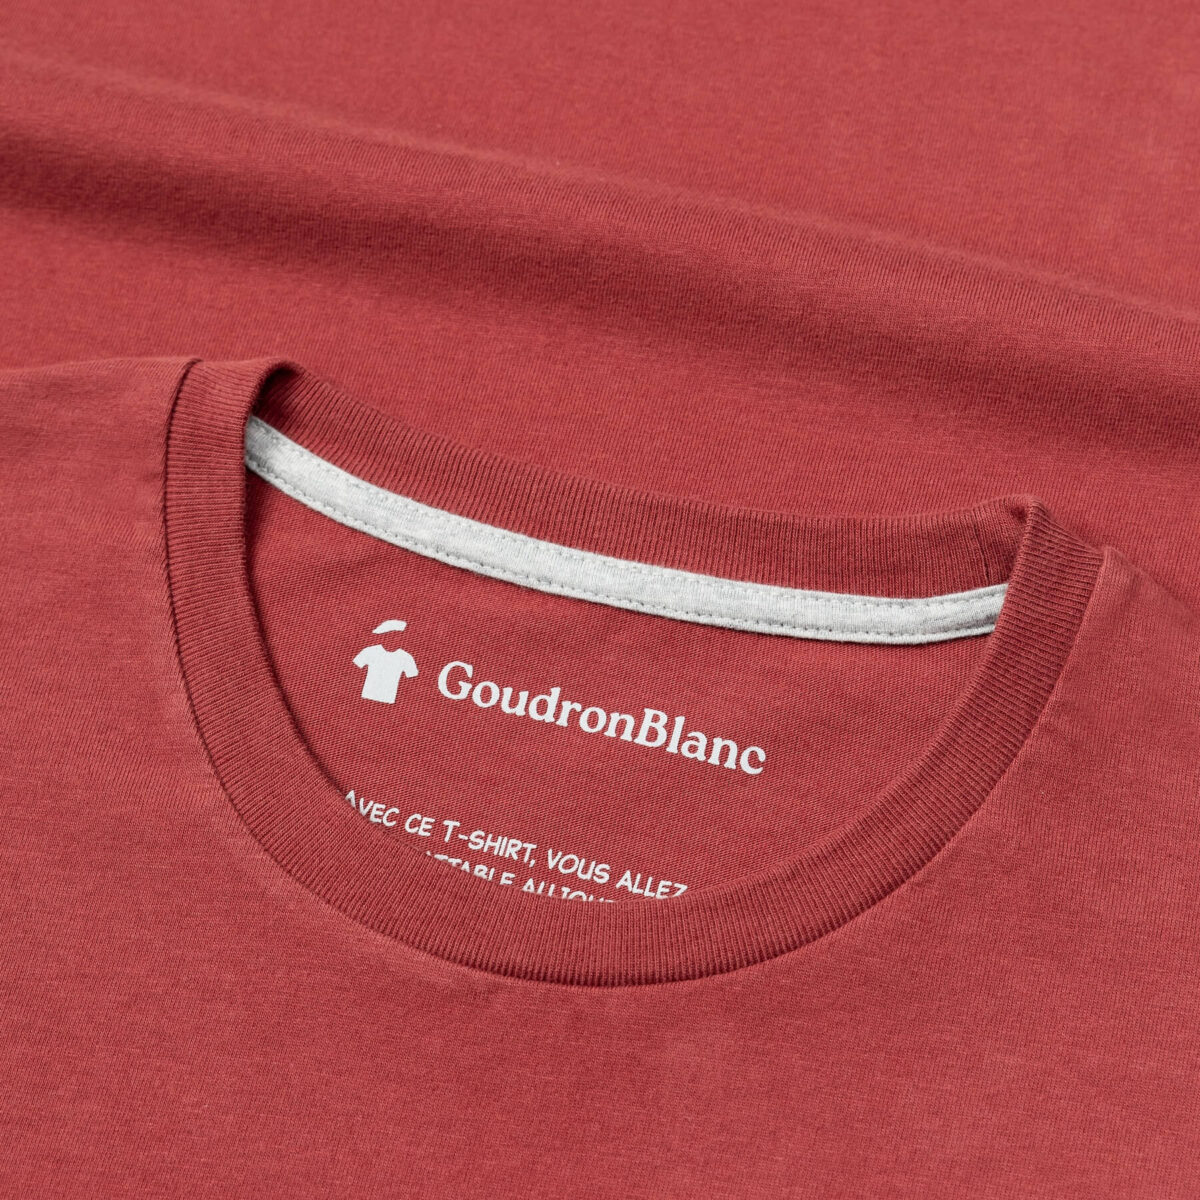 Encolure T-shirt rouge brique - GoudronBlanc